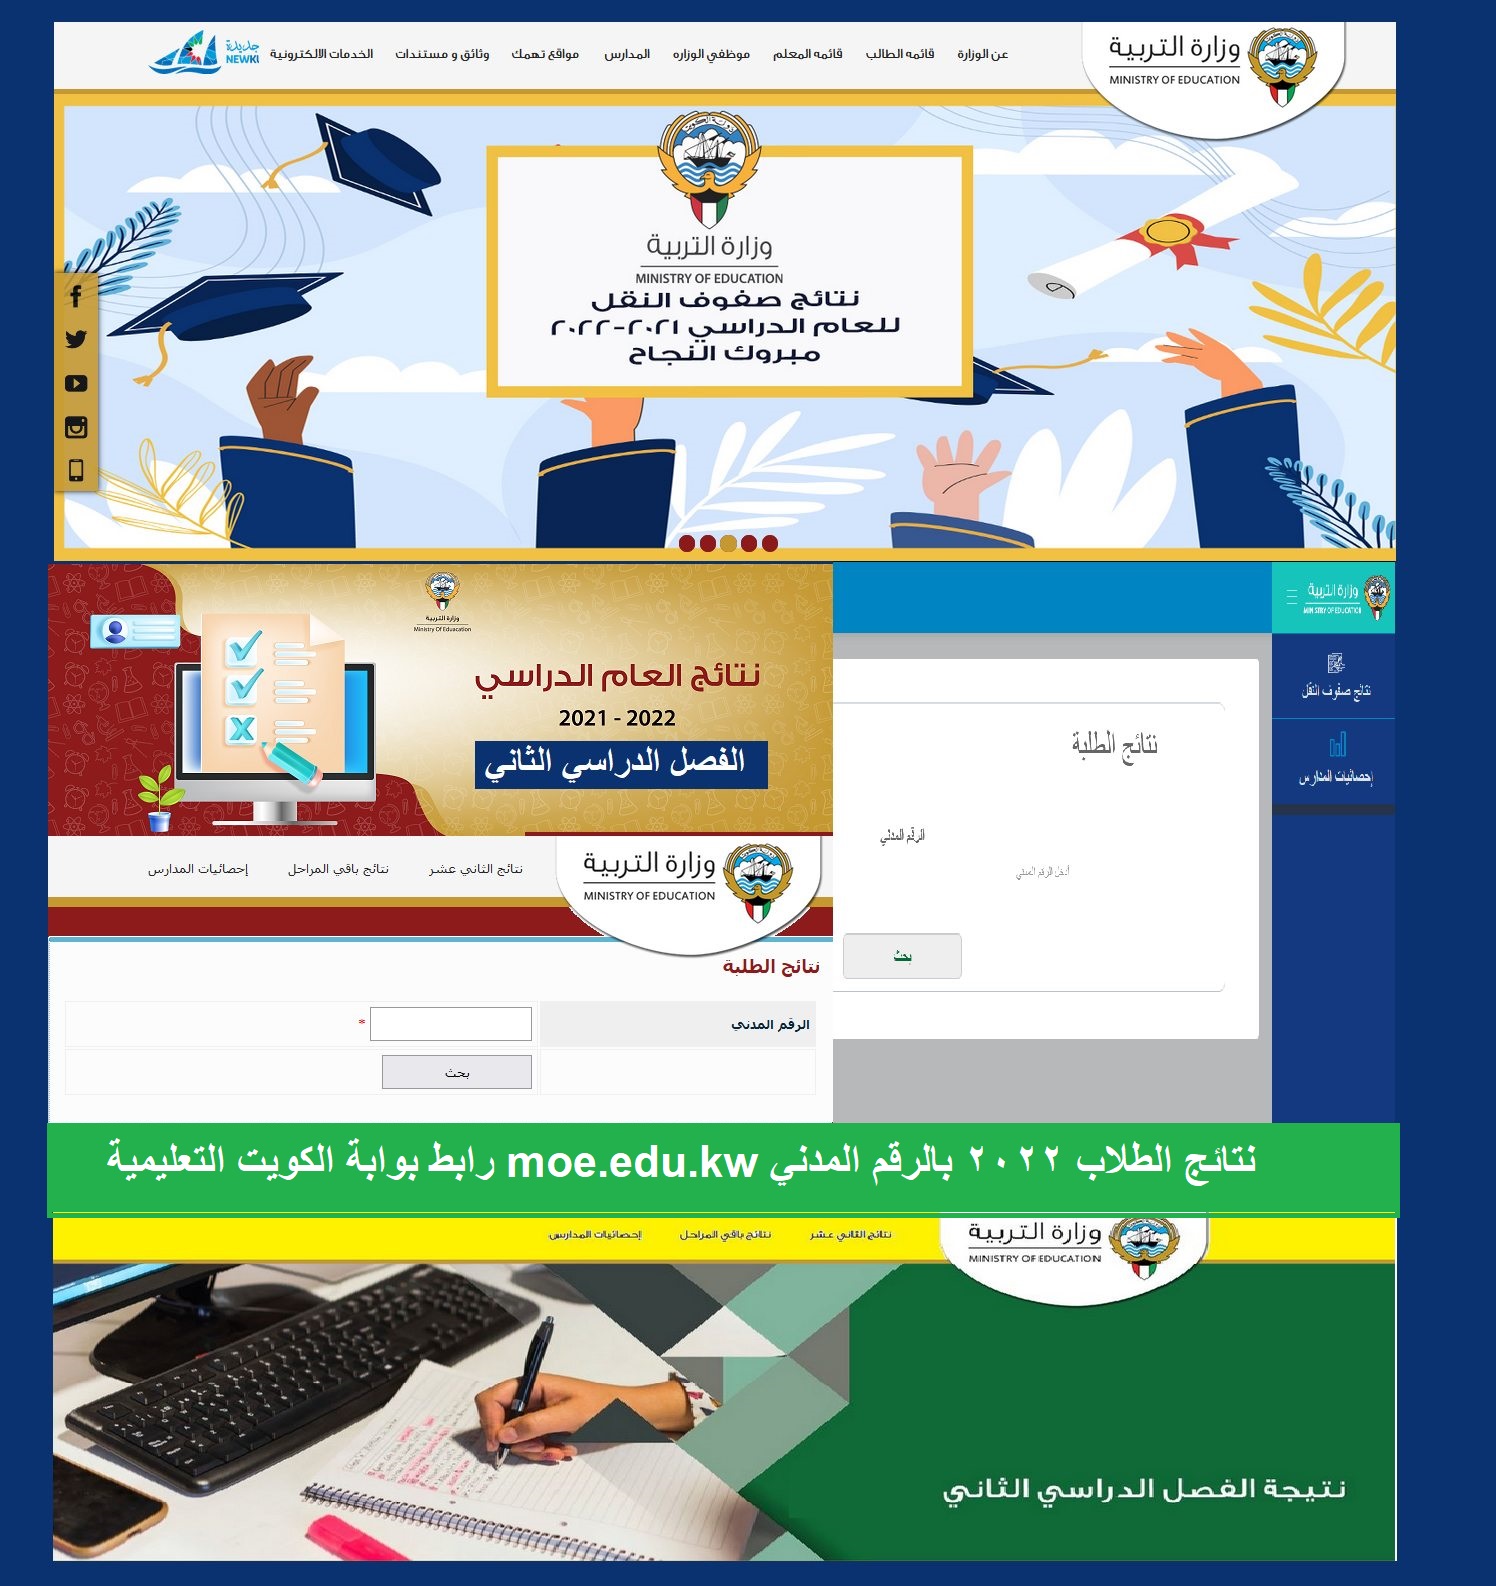 رابط بوابة الكويت التعليمية moe.edu.kw نتائج طلاب الثانوية العامة ٢٠٢٢ على المربع الإلكتروني وتطبيقات سهل